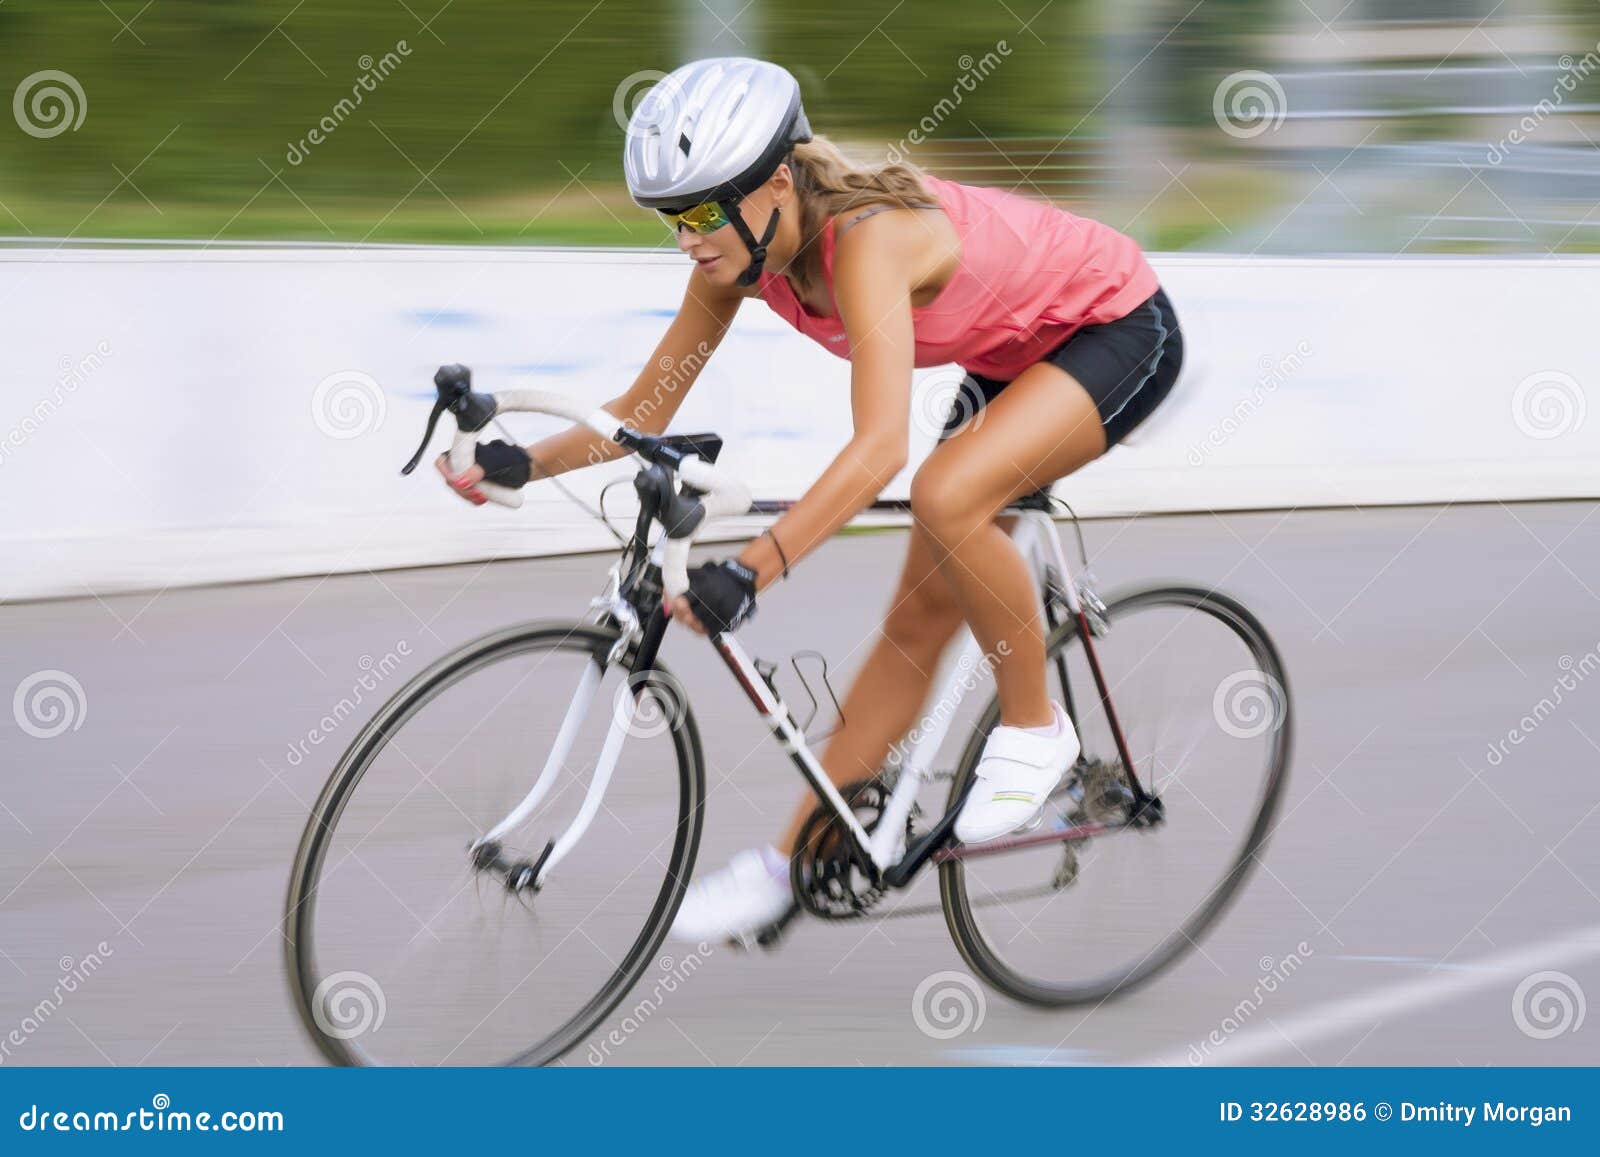 ladies bike race